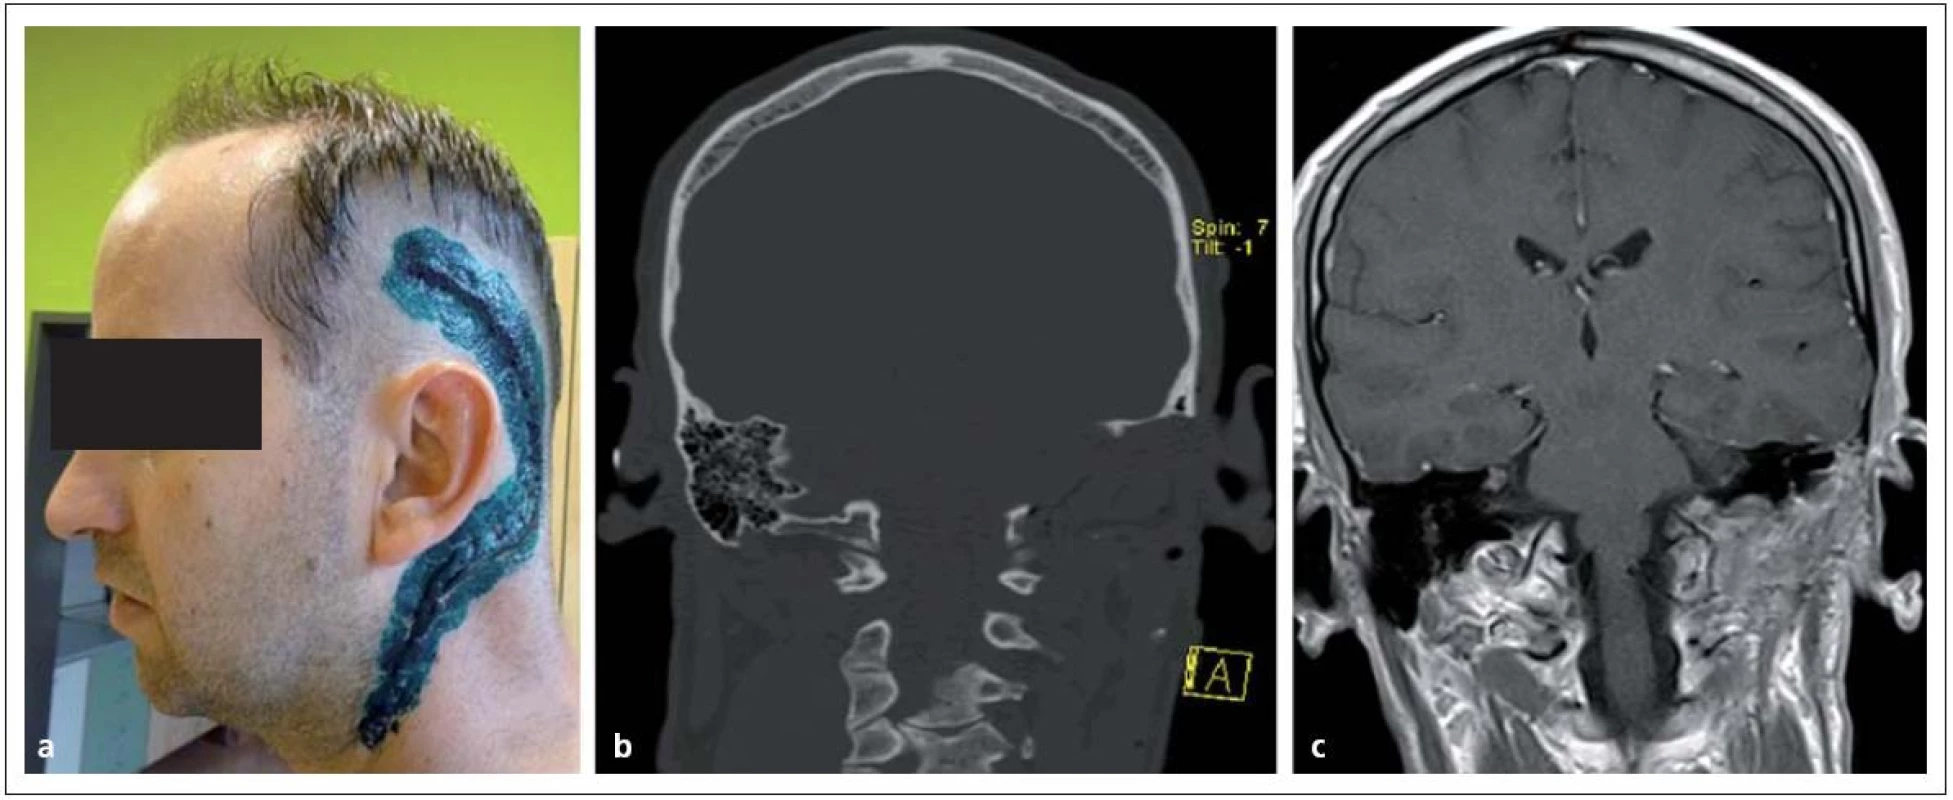 Glomus jugulare tumor po radikální resekci.
Obr. 11a) Rozsah operační rány.
Obr. 11b, c) Pooperační CT a MR bez rezidua nádoru.